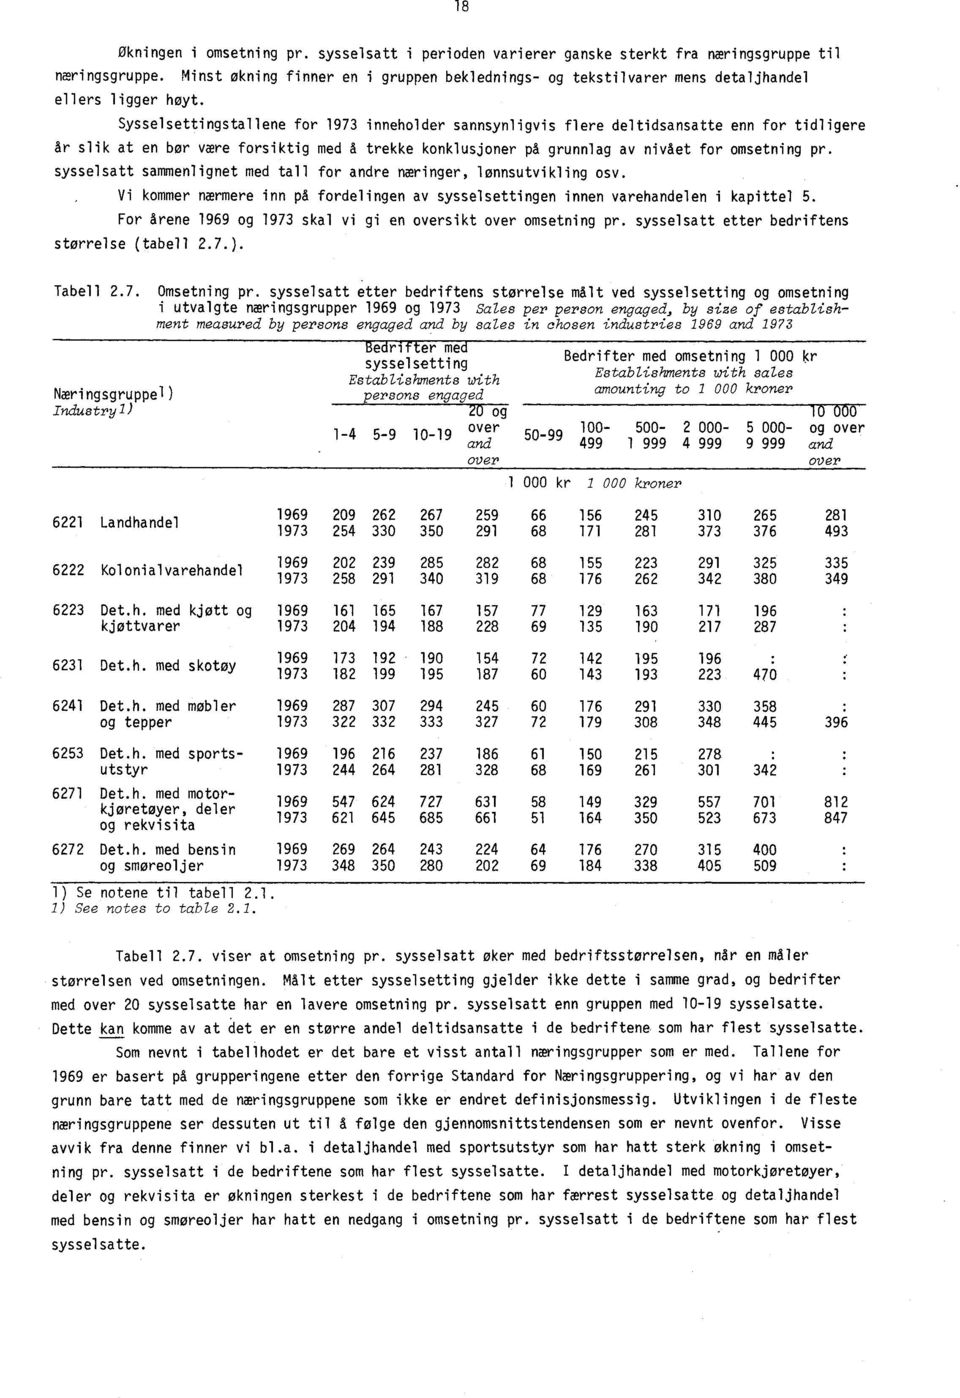 Sysselsettingstallene for 1973 inneholder sannsynligvis flere deltidsansatte enn for tidligere år slik at en bor være forsiktig med å trekke konklusjoner på grunnlag av nivået for omsetning pr.